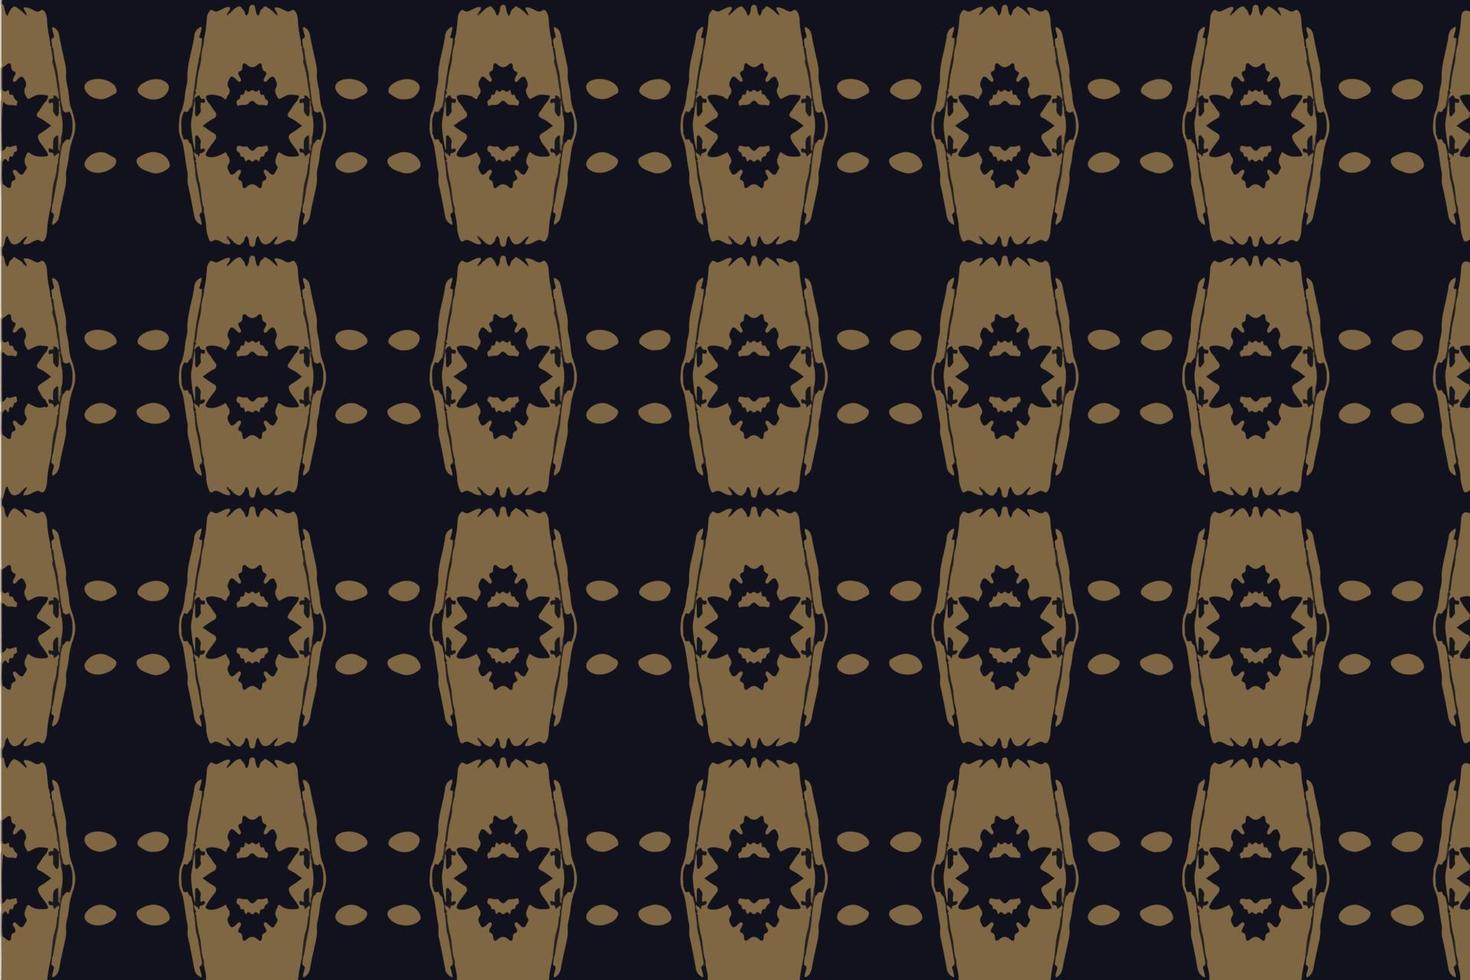 abstraktes nahtloses muster, nahtloses ethnisches orientalisches muster traditionell, design für innen, tapete, stoff, vorhang, teppich, kleidung, batik, hintergrund, nahtlose illustration, stickereistil. vektor